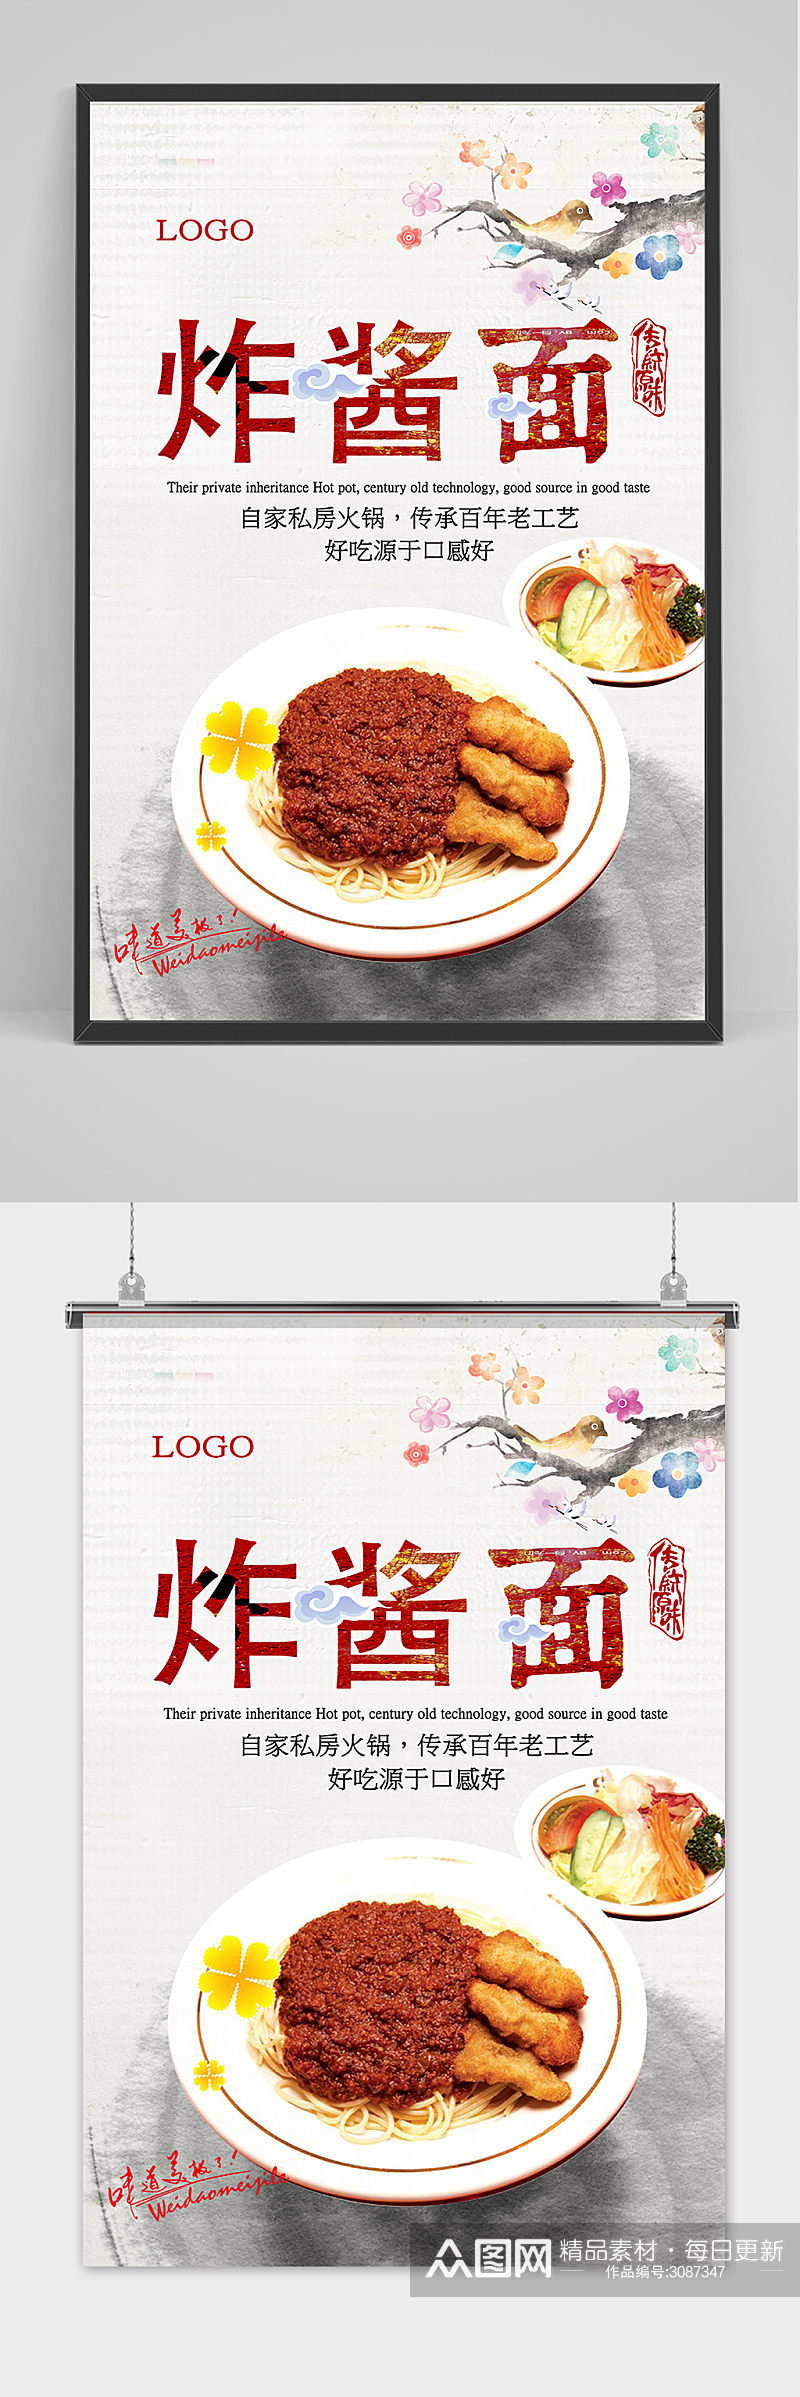 复古中国风美食炸酱面海报素材